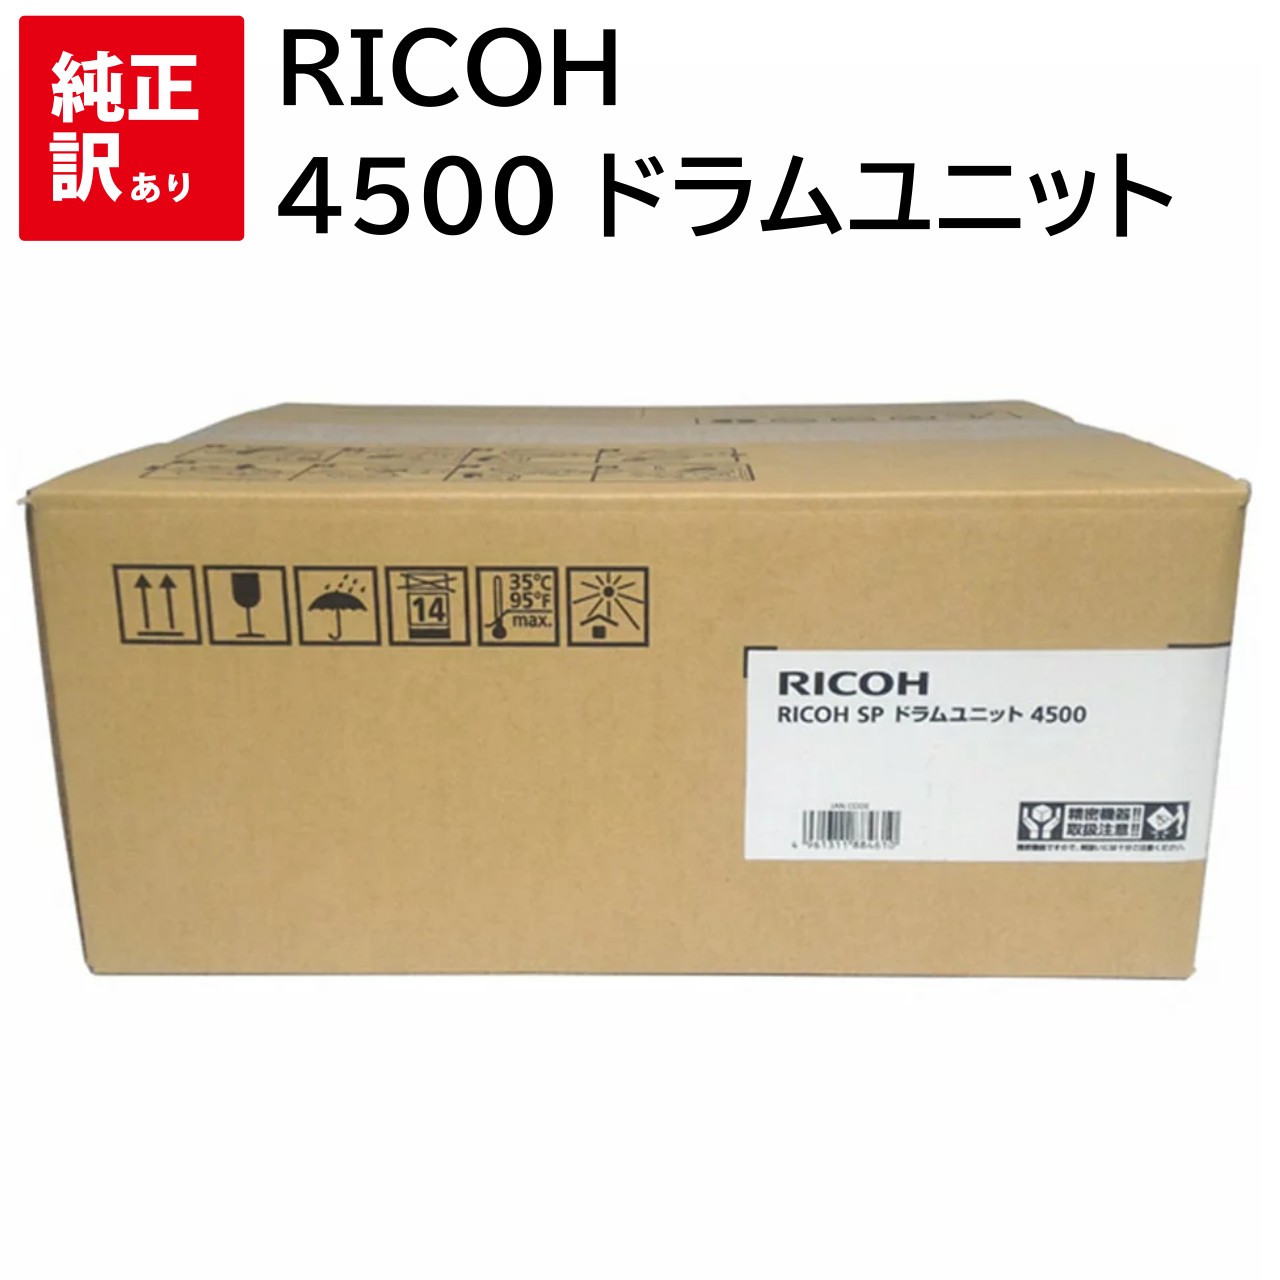 訳あり 新品 RICOH 4500 ドラム ユニット リコー カートリッジ パソコン 周辺機器 PCサプライ 消耗品 プリンター メーカー 純正 送料無料 4961311884610 SP 4510 / 4500 / 4510SF / 512560画像